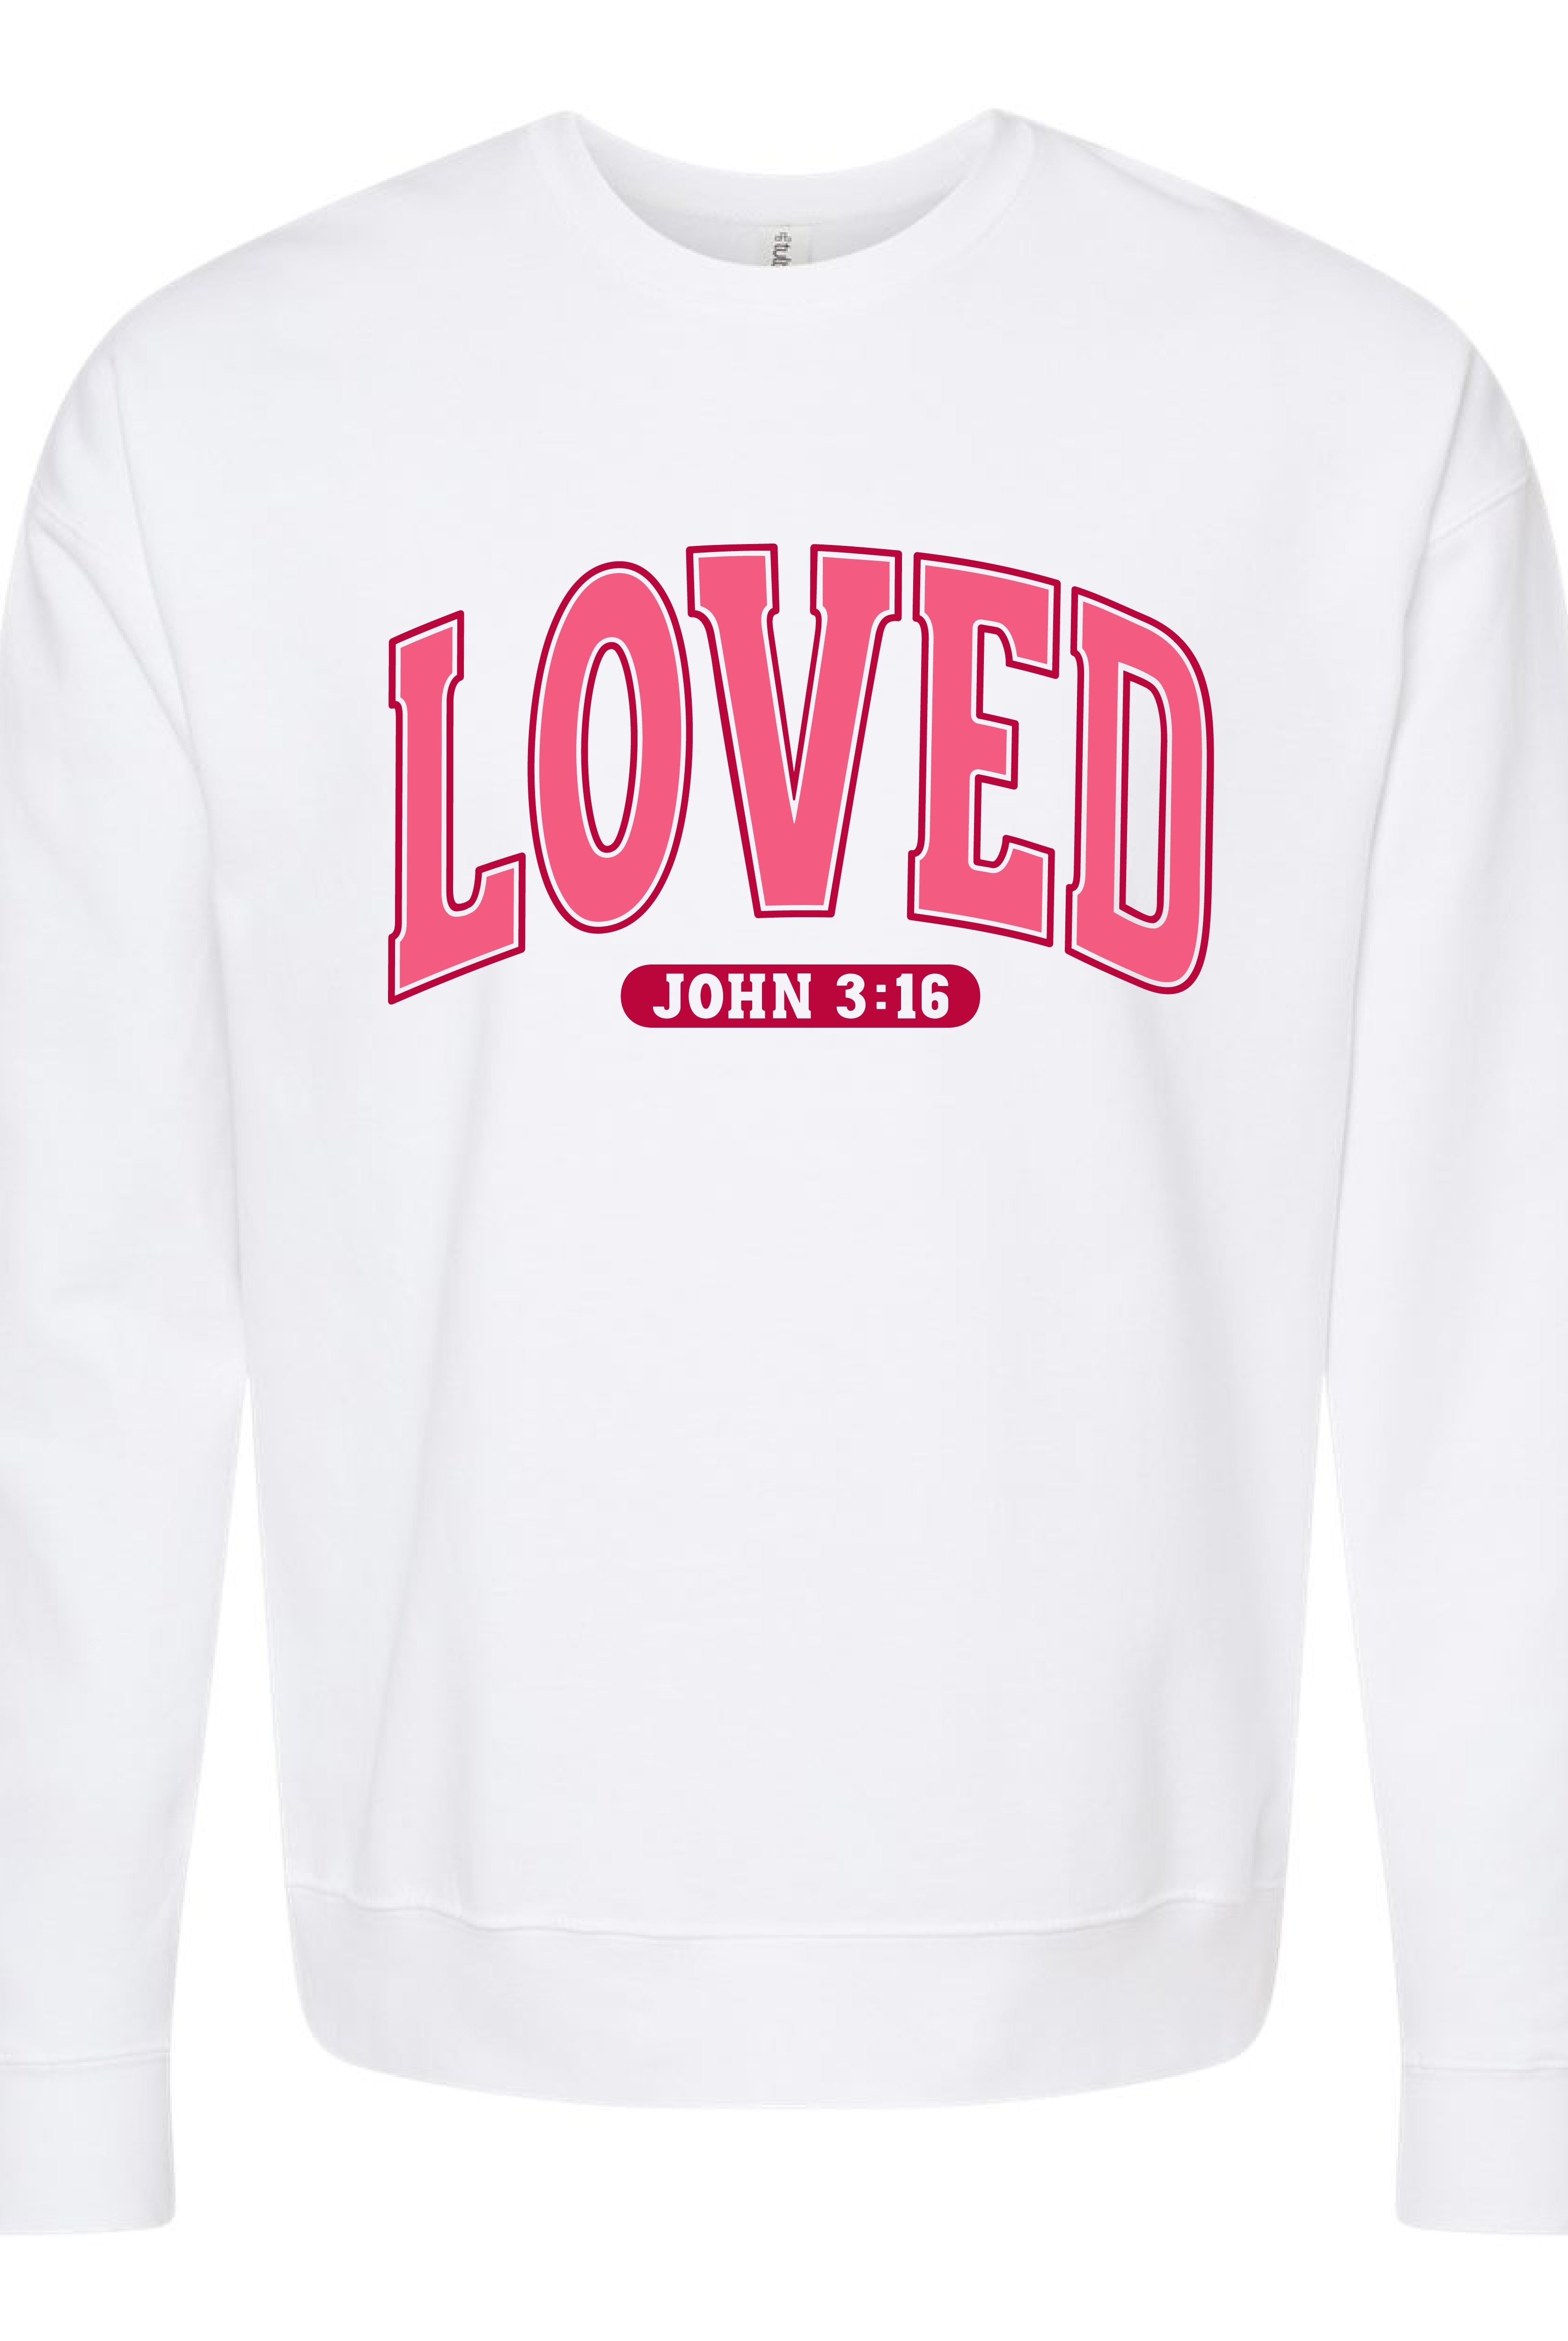 Love 3:16 Crew-Graphic Sweatshirts-Podos Boutique, a Women's Fashion Boutique Located in Calera, AL